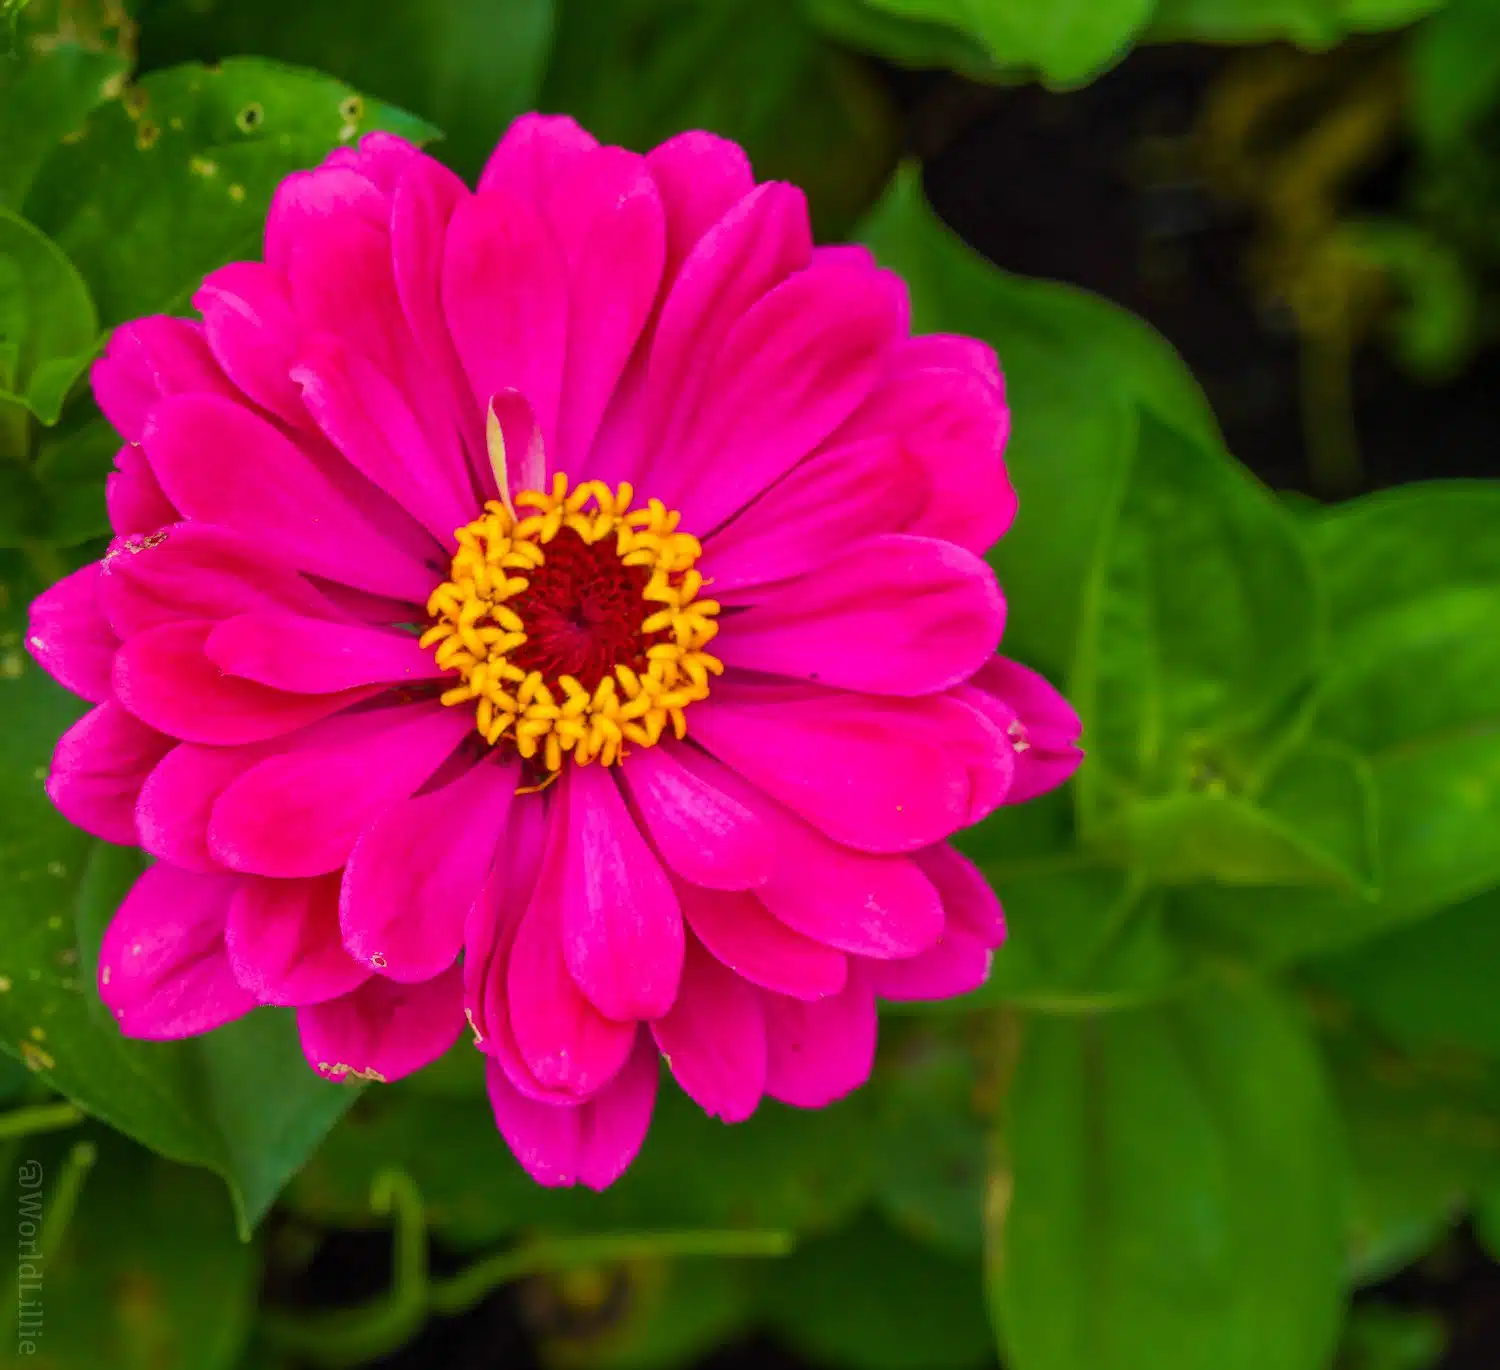 Bright pink flower